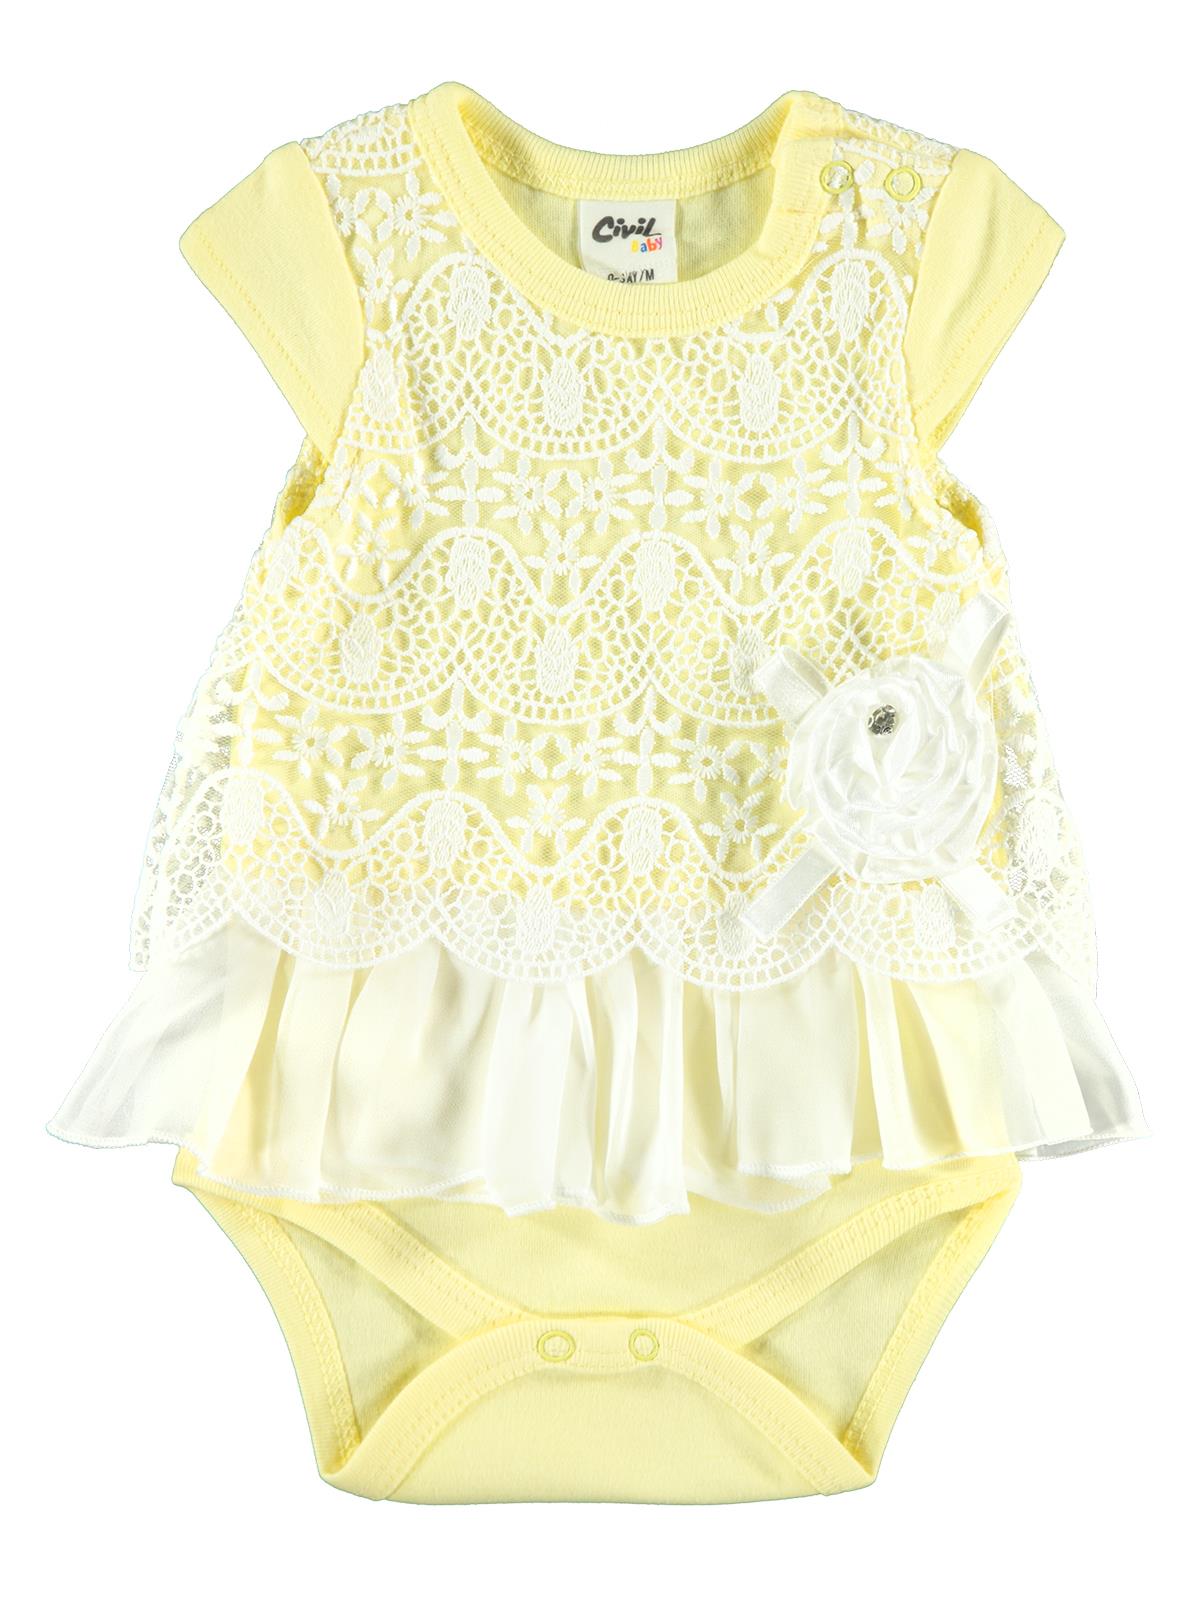 Ciivl Baby Kız Bebek Dantelli Elbise 0-9 Ay Sarı